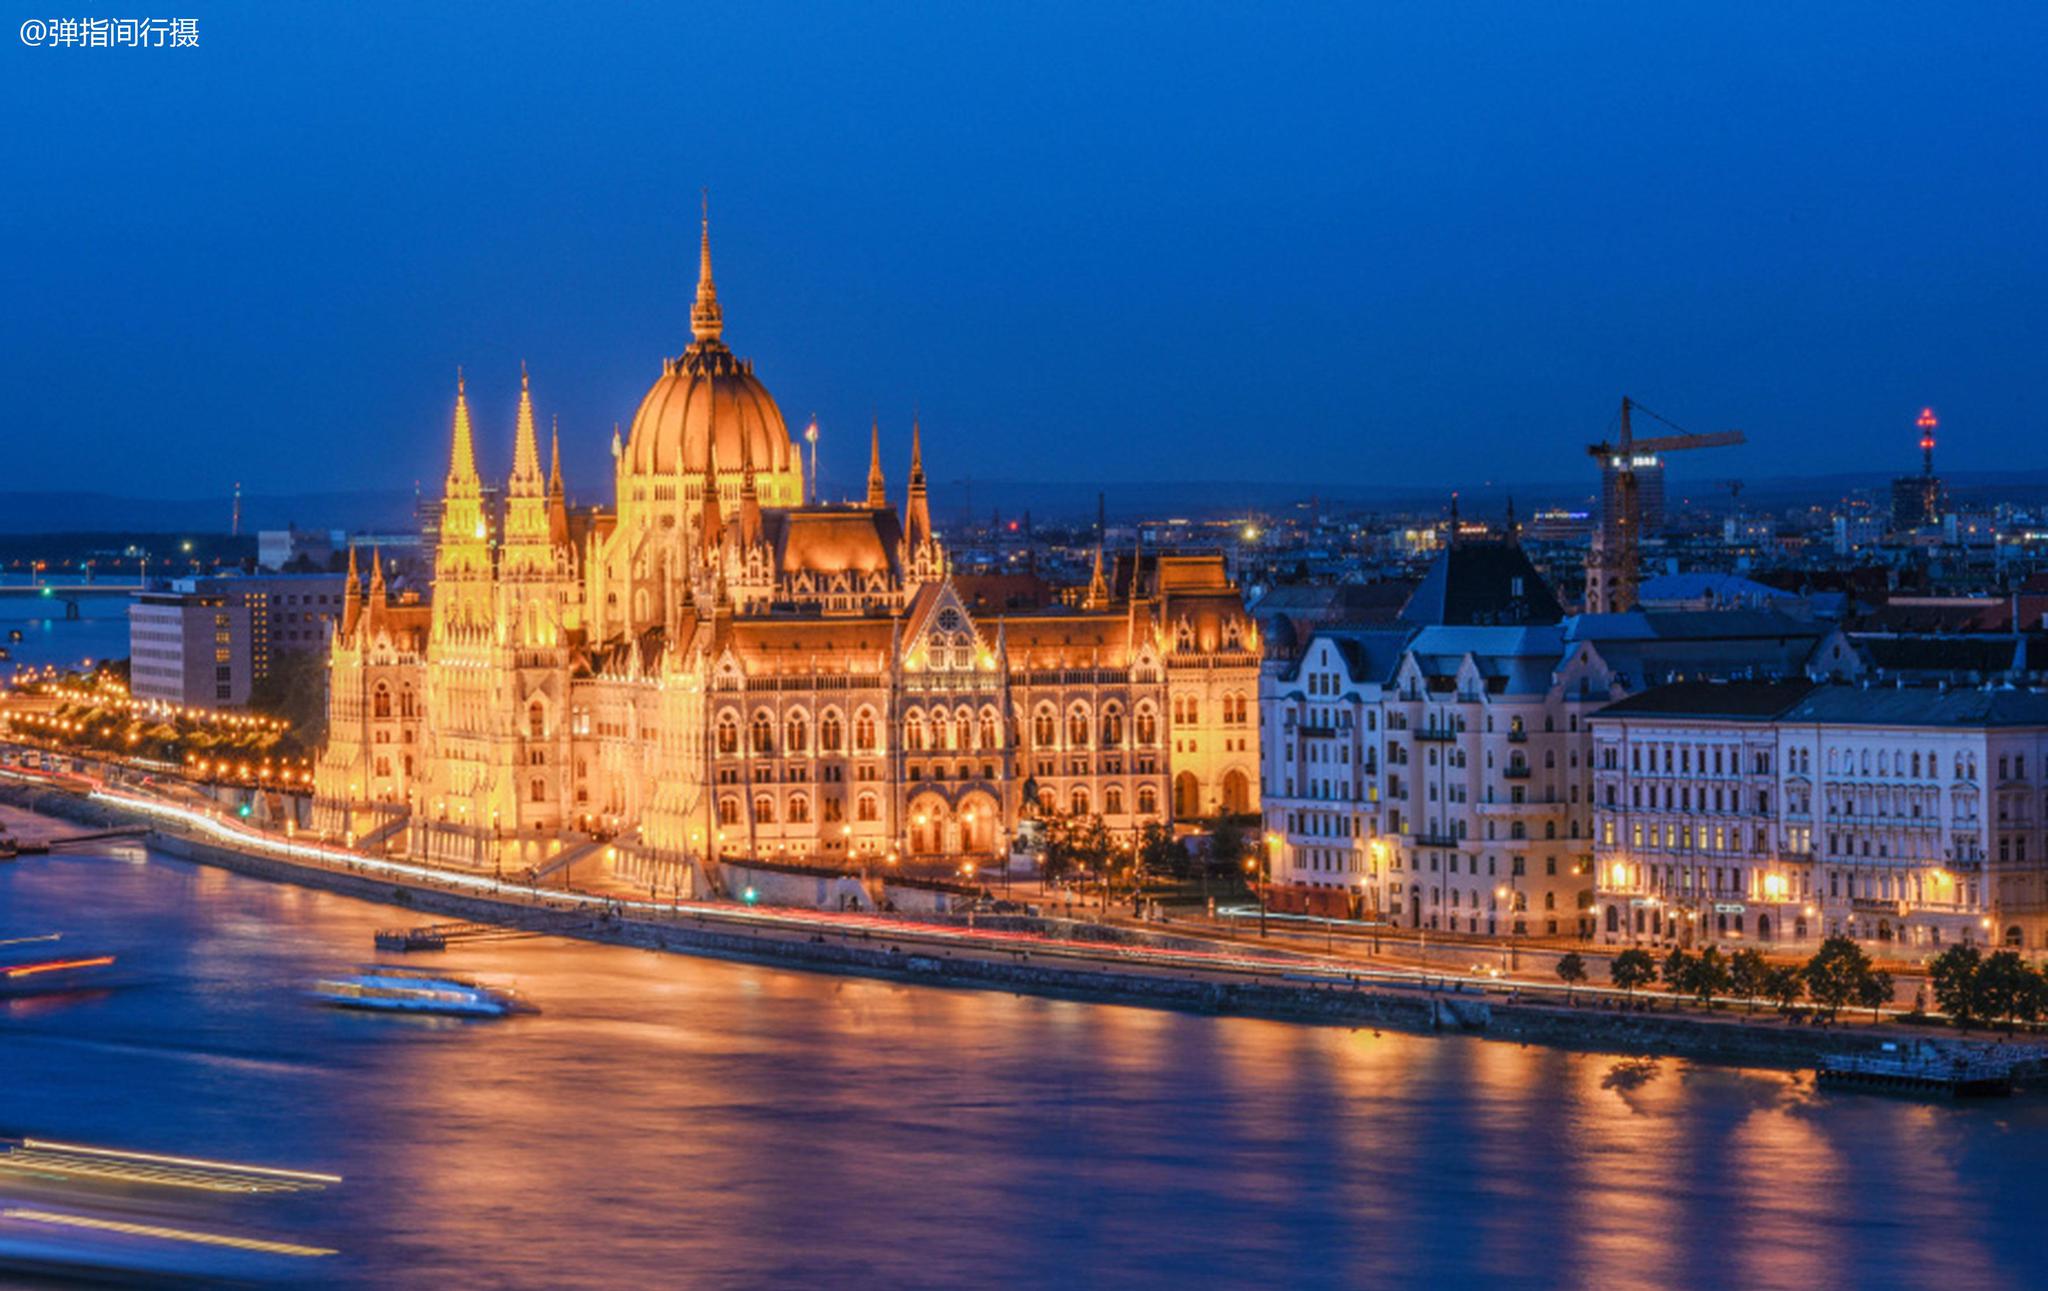 【携程攻略】布达佩斯渔人堡景点,渔人堡和国会大厦、国家歌剧院一起被誉为匈牙利最令人震撼的建筑群。…